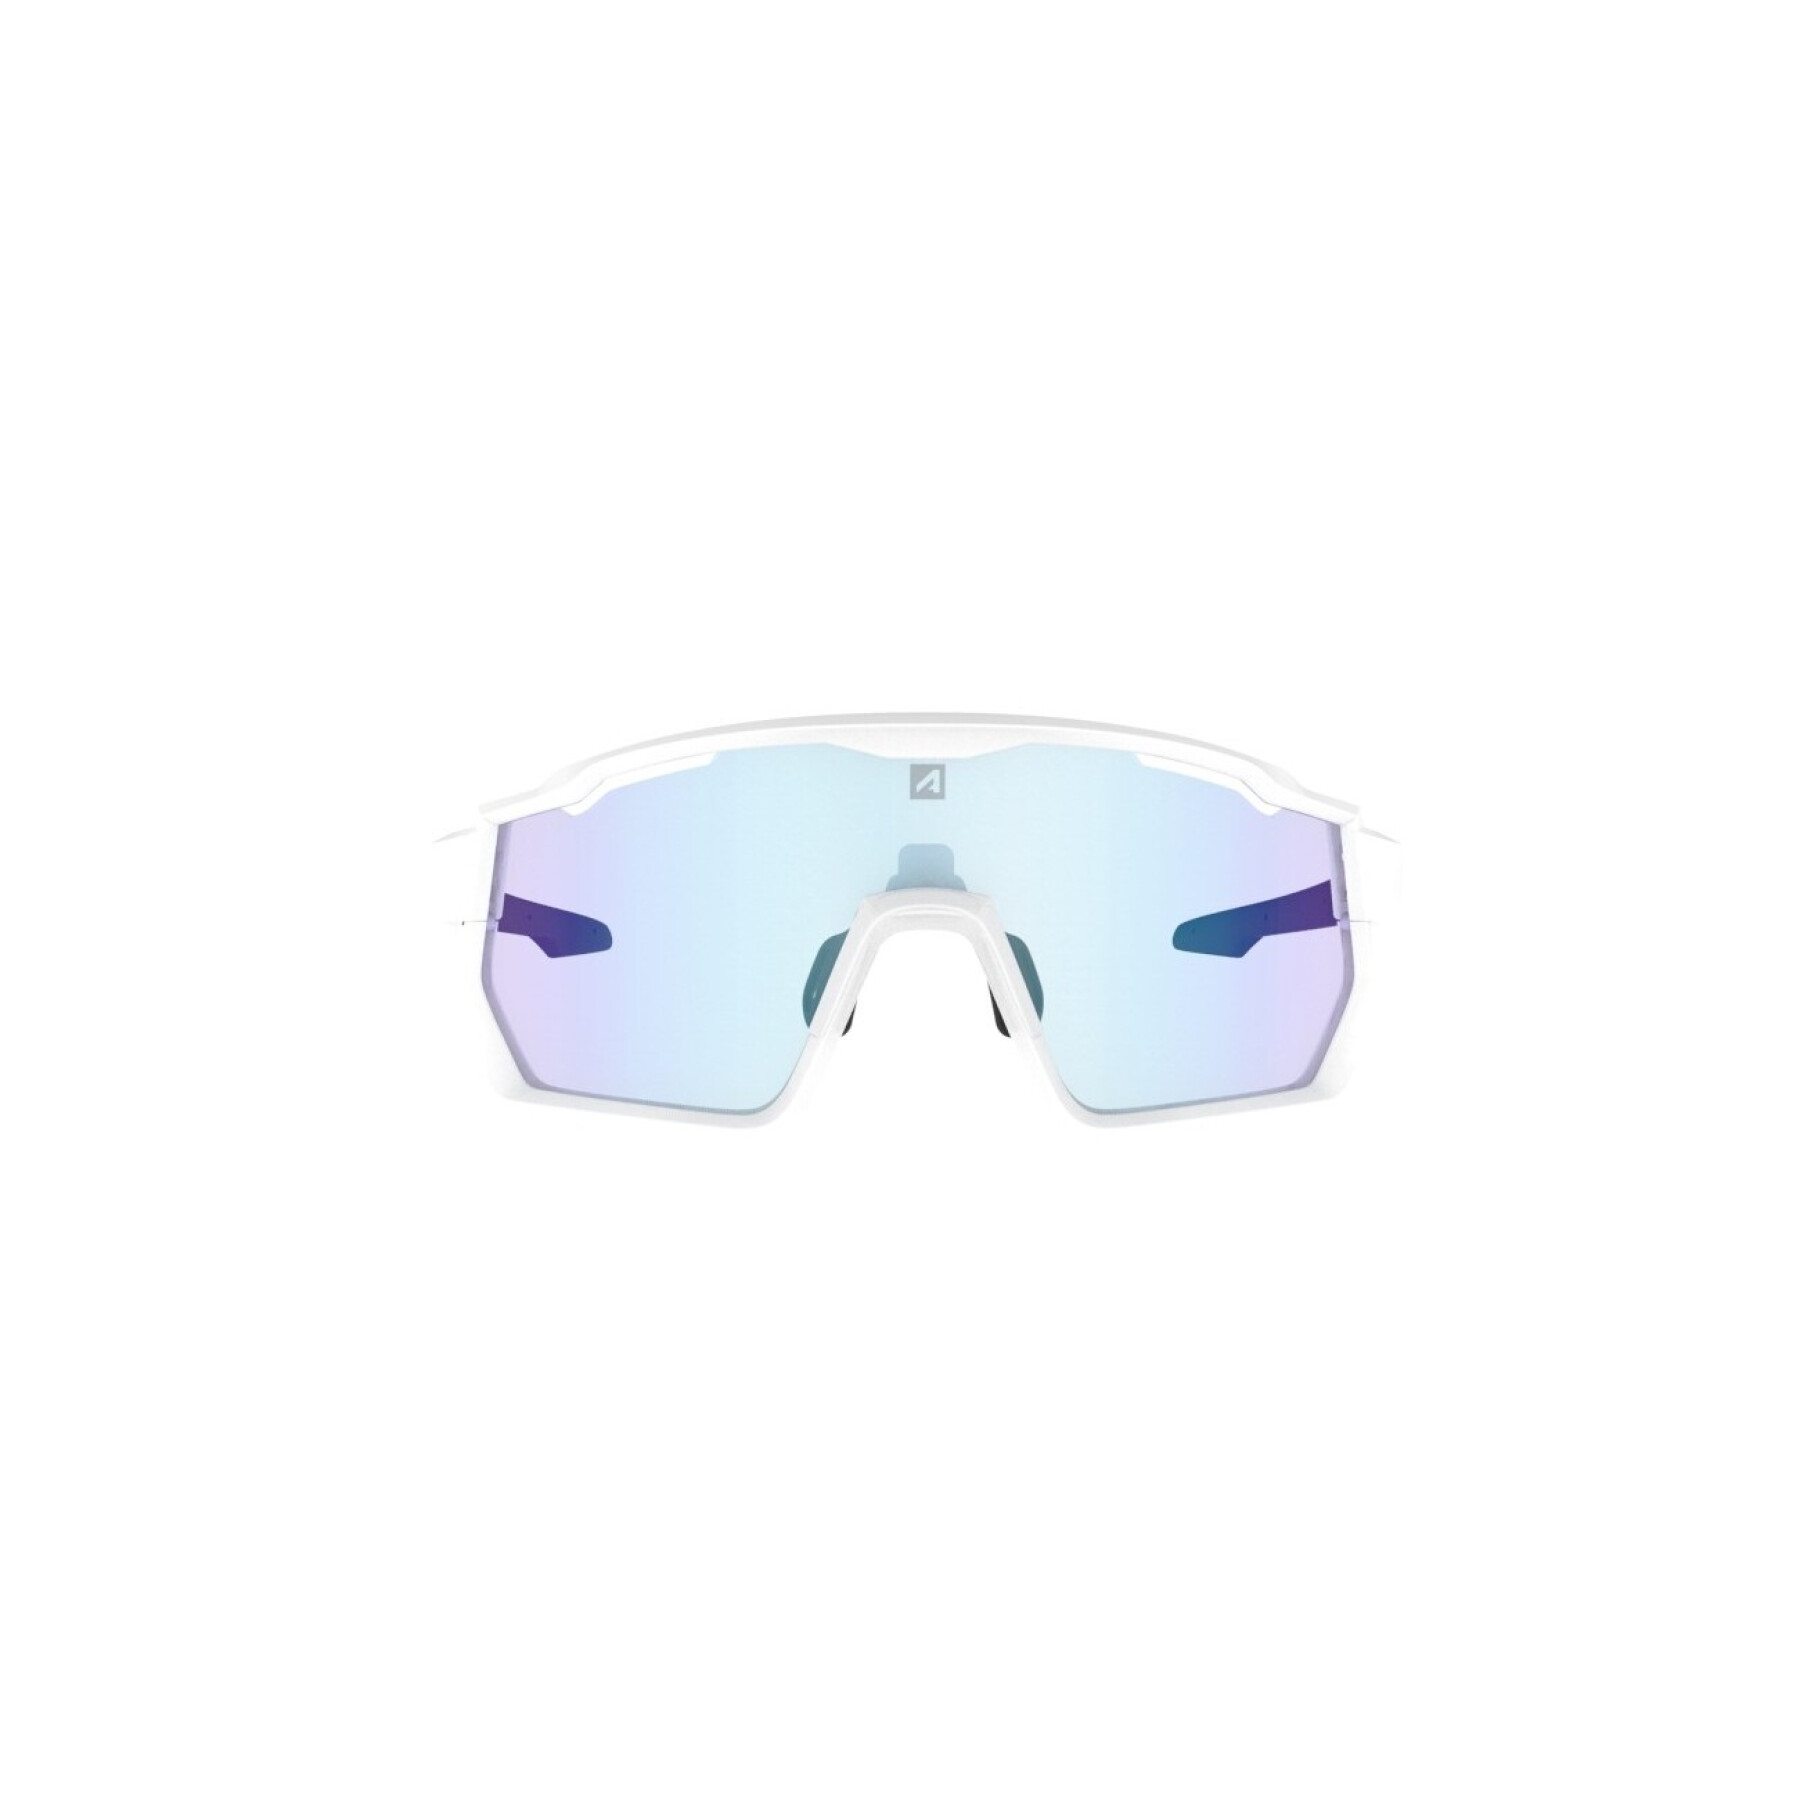 Gafas de sol AZR Pro Kromic Pro Race RX